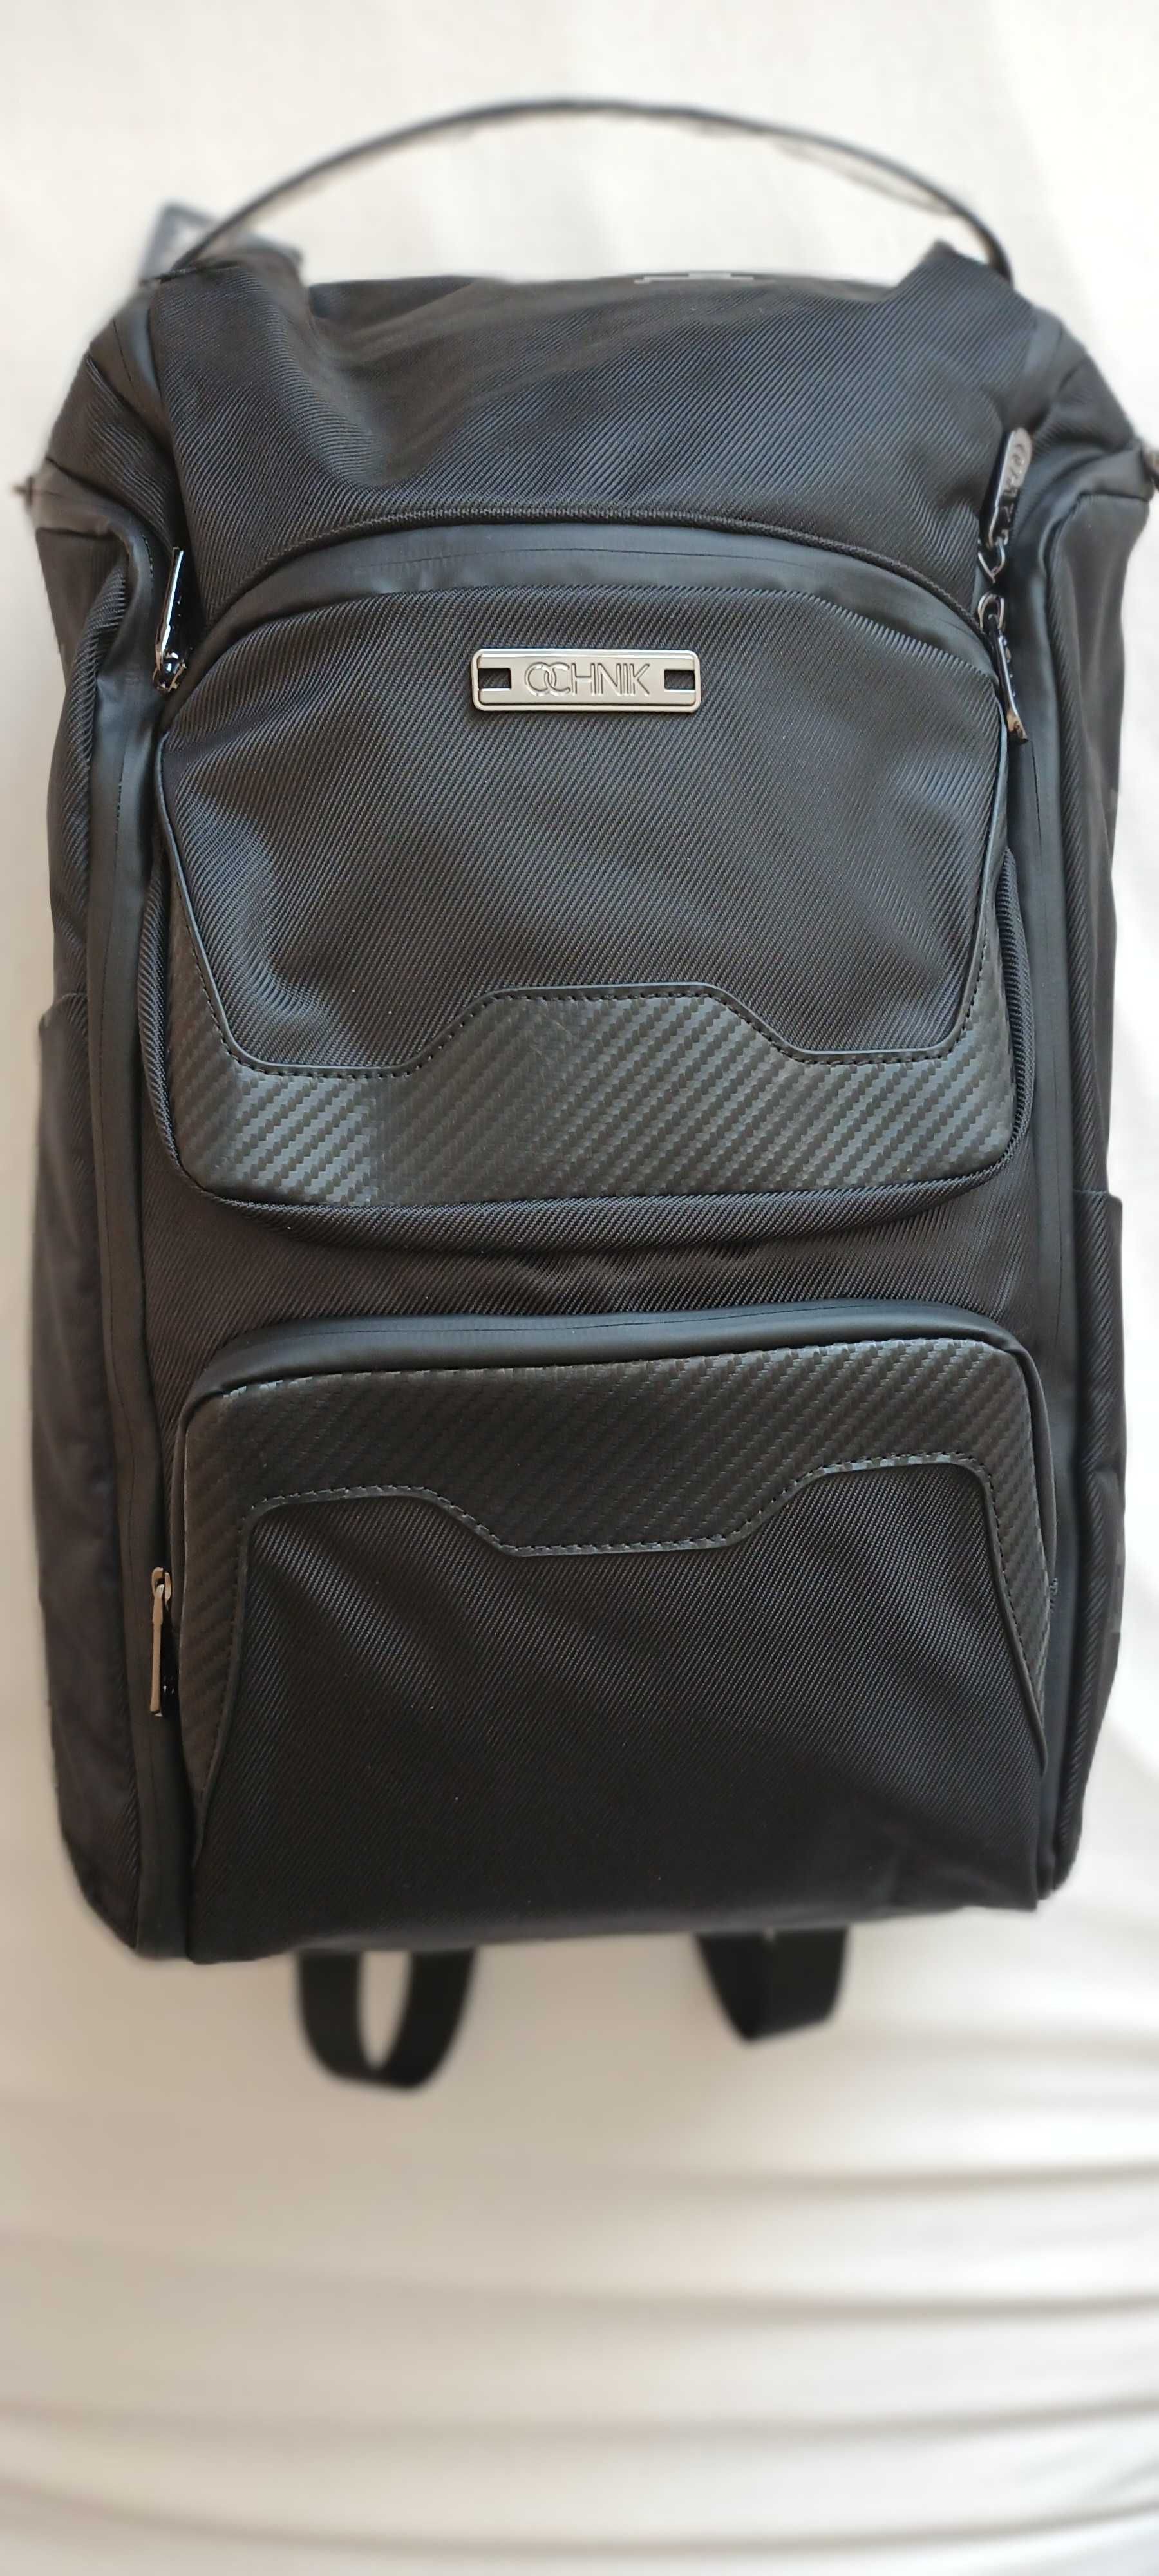 Plecak miejski z kieszenią na laptopa. Nowy, Ochnik, PLCMN-0011-99